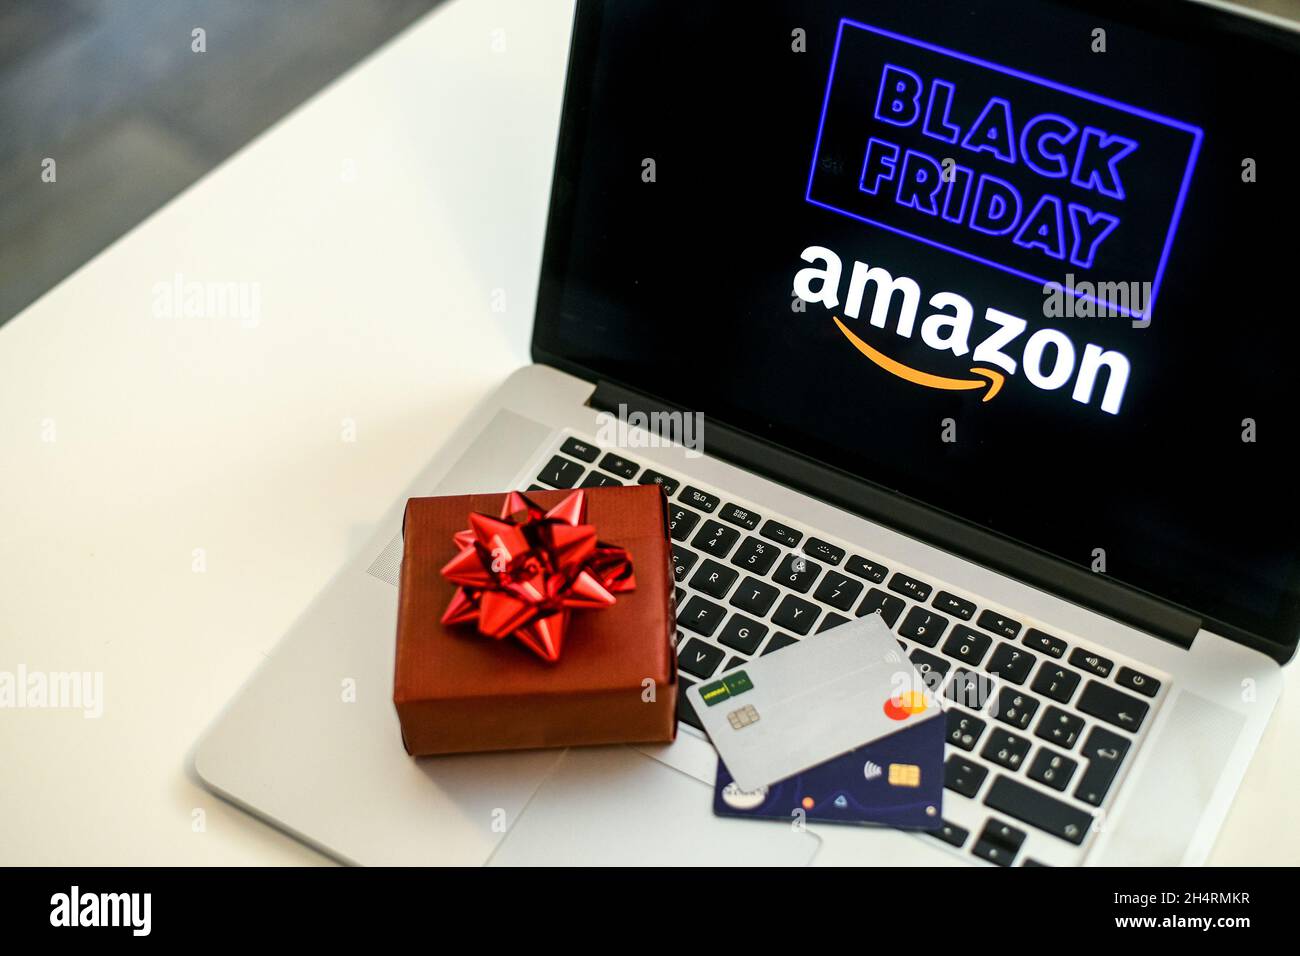 Acheter un cadeau de Noël dans la boutique en ligne Amazon le vendredi  noir.Sur l'écran de l'ordinateur portable.Achat de cadeaux de  Noël.E-commerce, technologie, shopp Photo Stock - Alamy